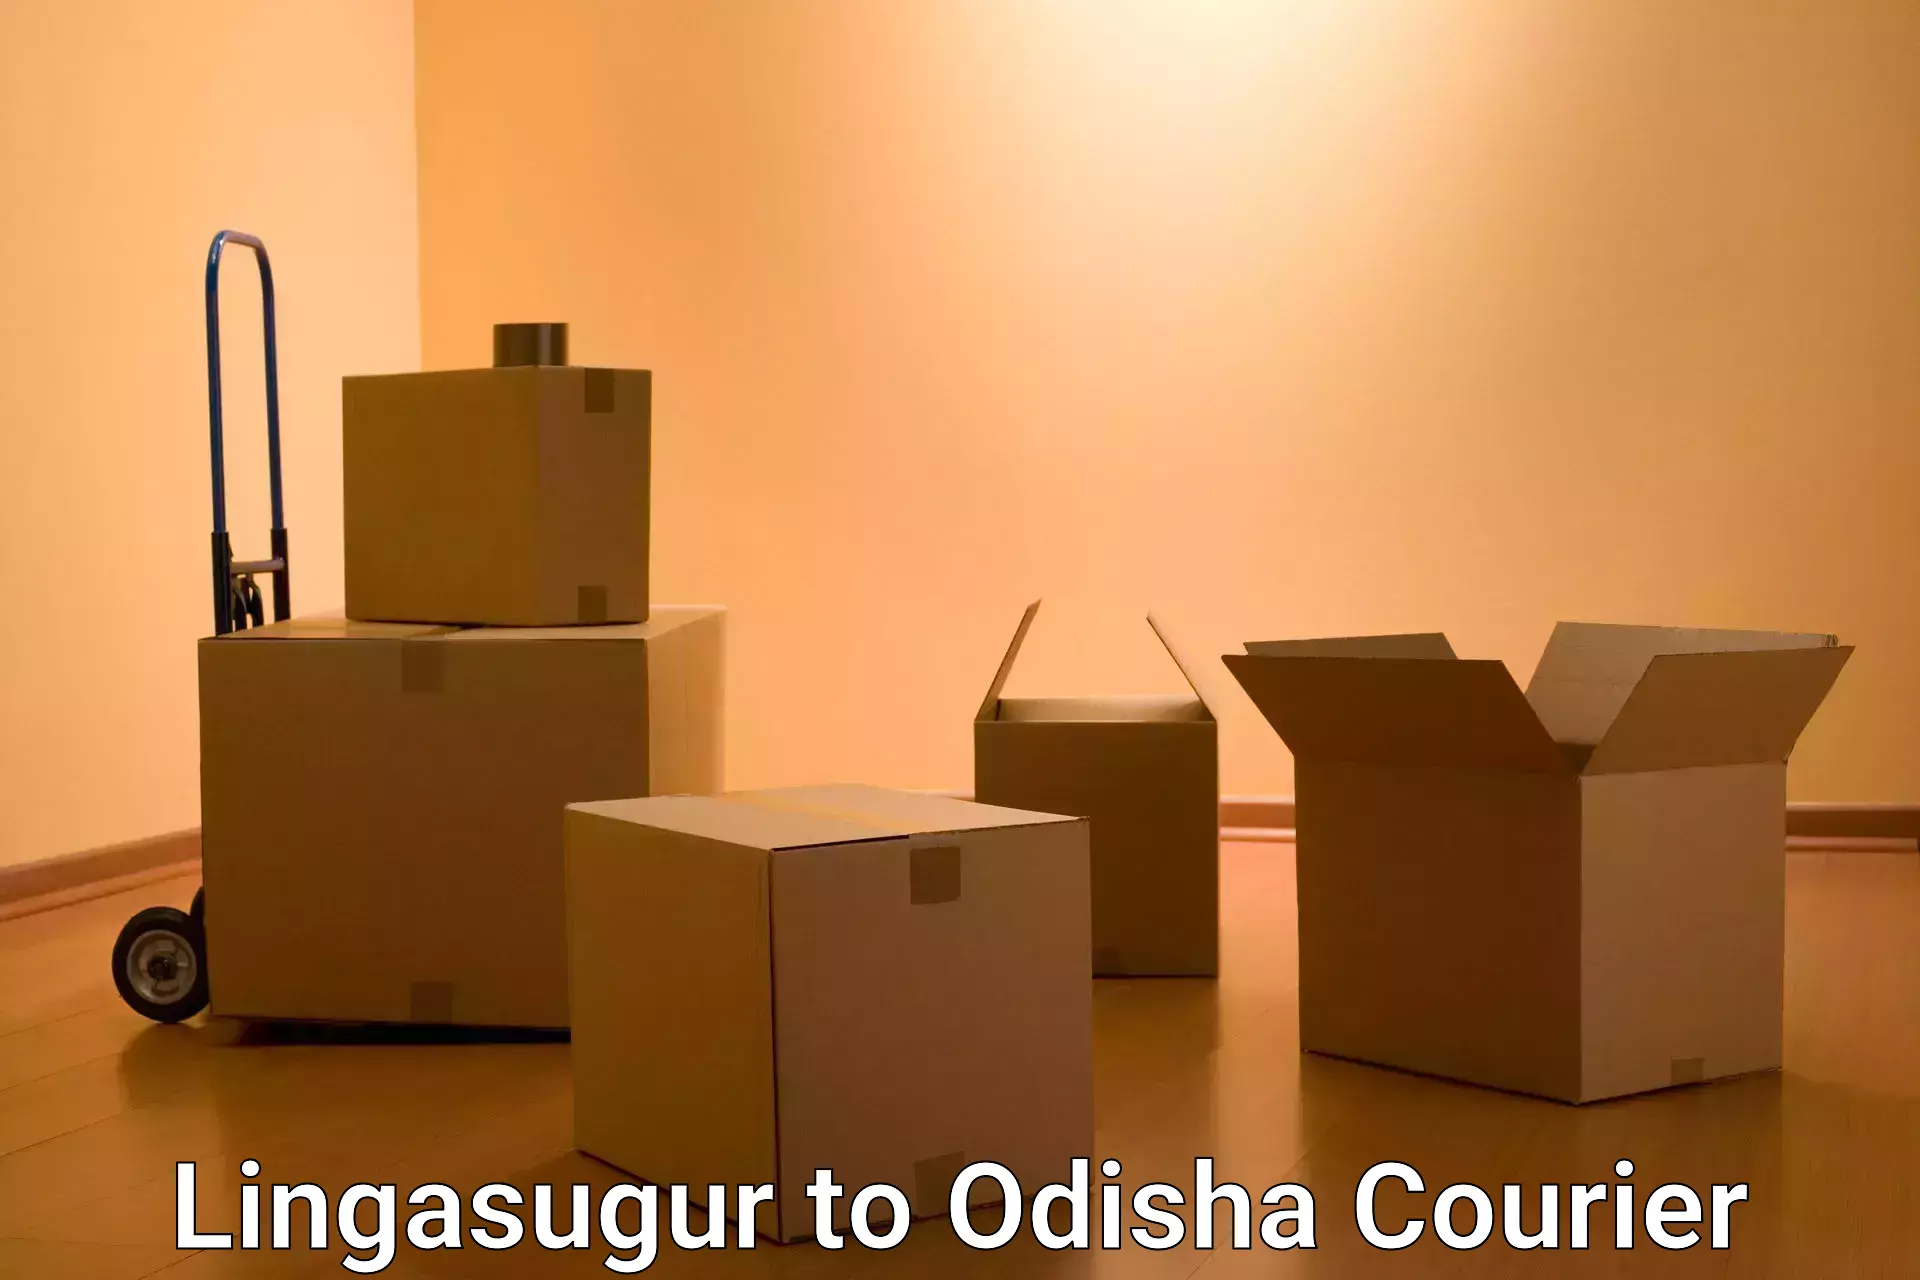 Logistics service provider Lingasugur to Odisha